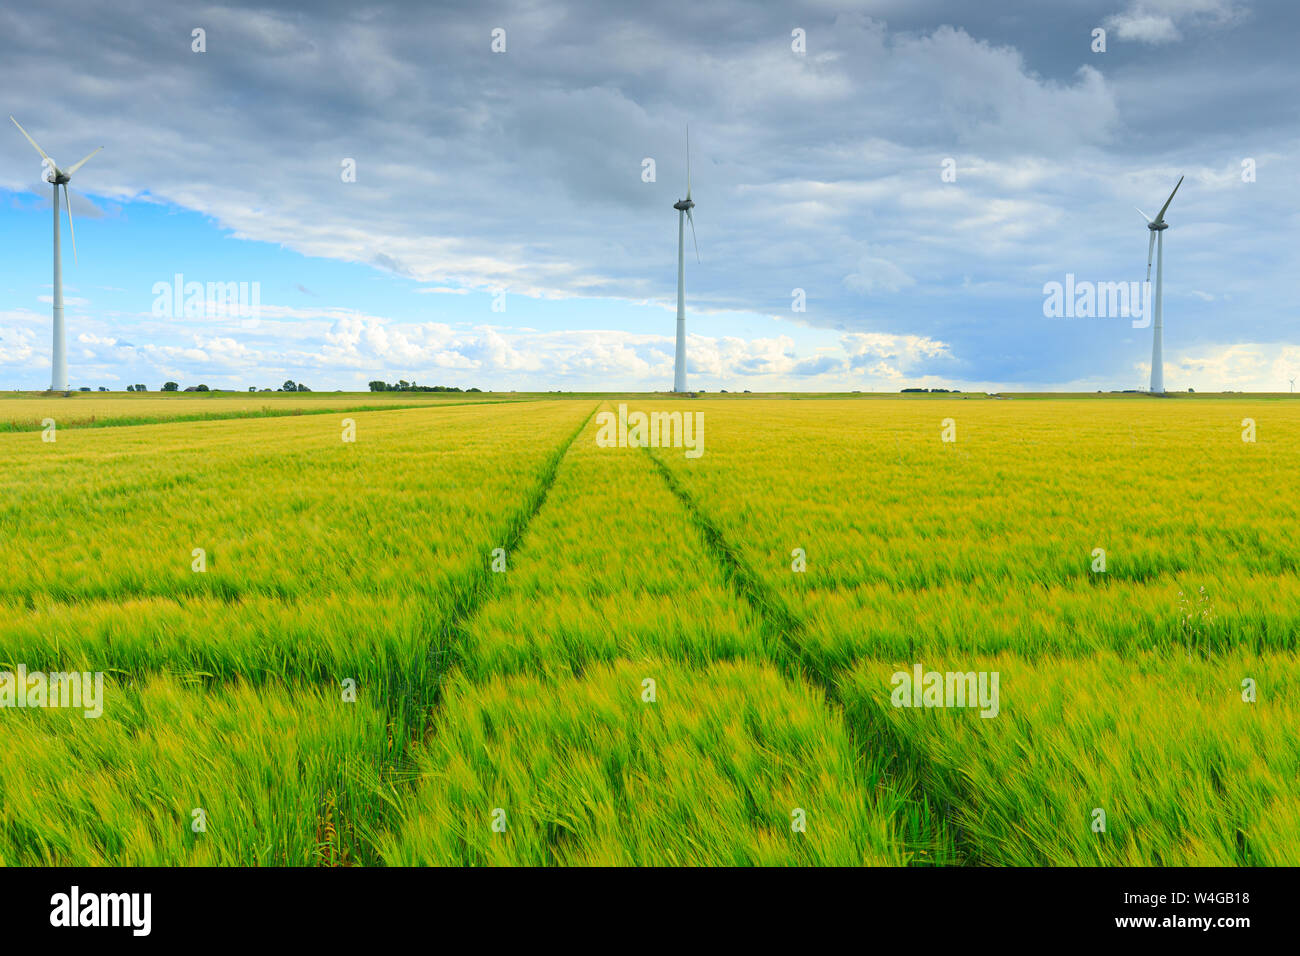 Molinos de viento en un paisaje agrícola produciendo energía limpia y verde para un mundo sostenible con trigo que crecen en los campos de verano Foto de stock